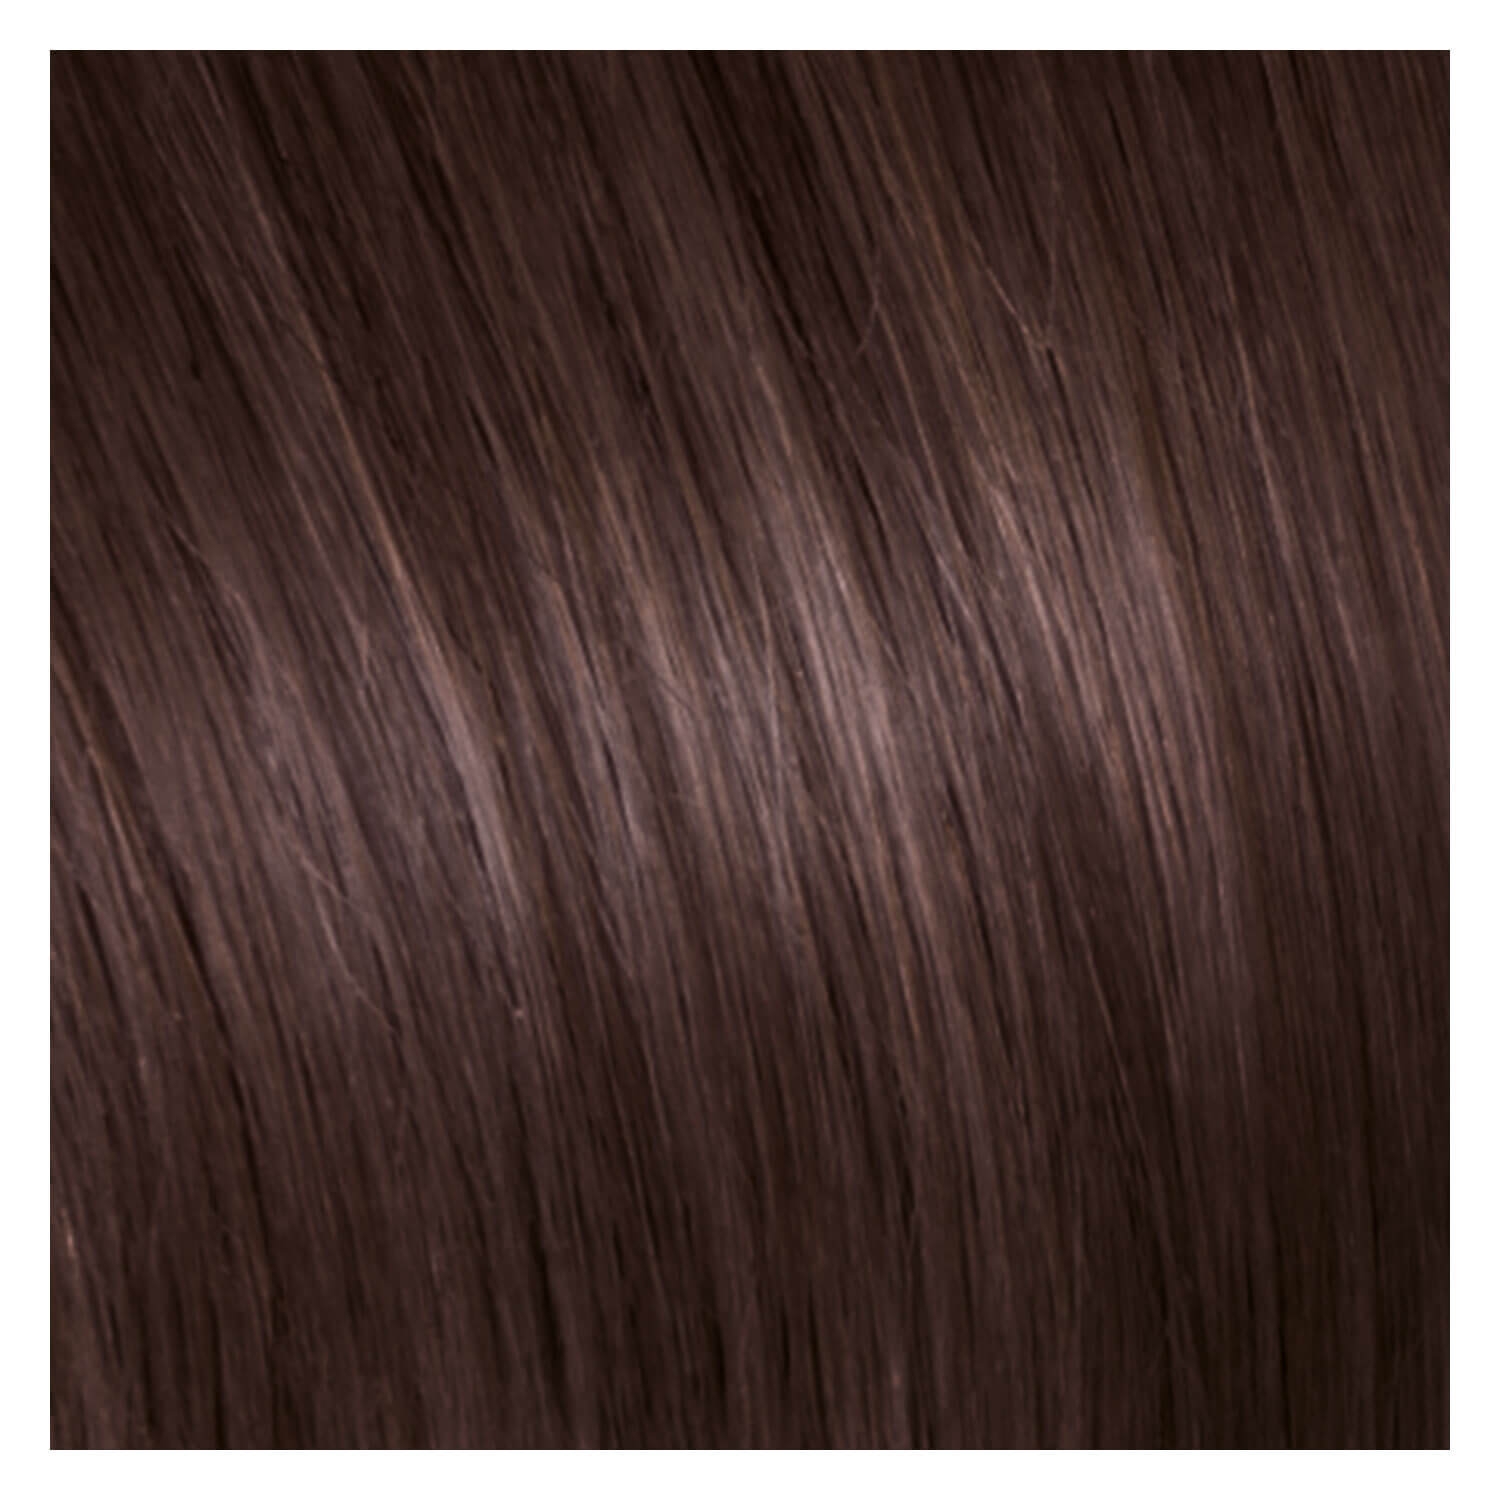 Produktbild von SHE Clip In-System Hair Extensions - 9-teiliges Set 6 Helles Kastanienbraun 50/55cm